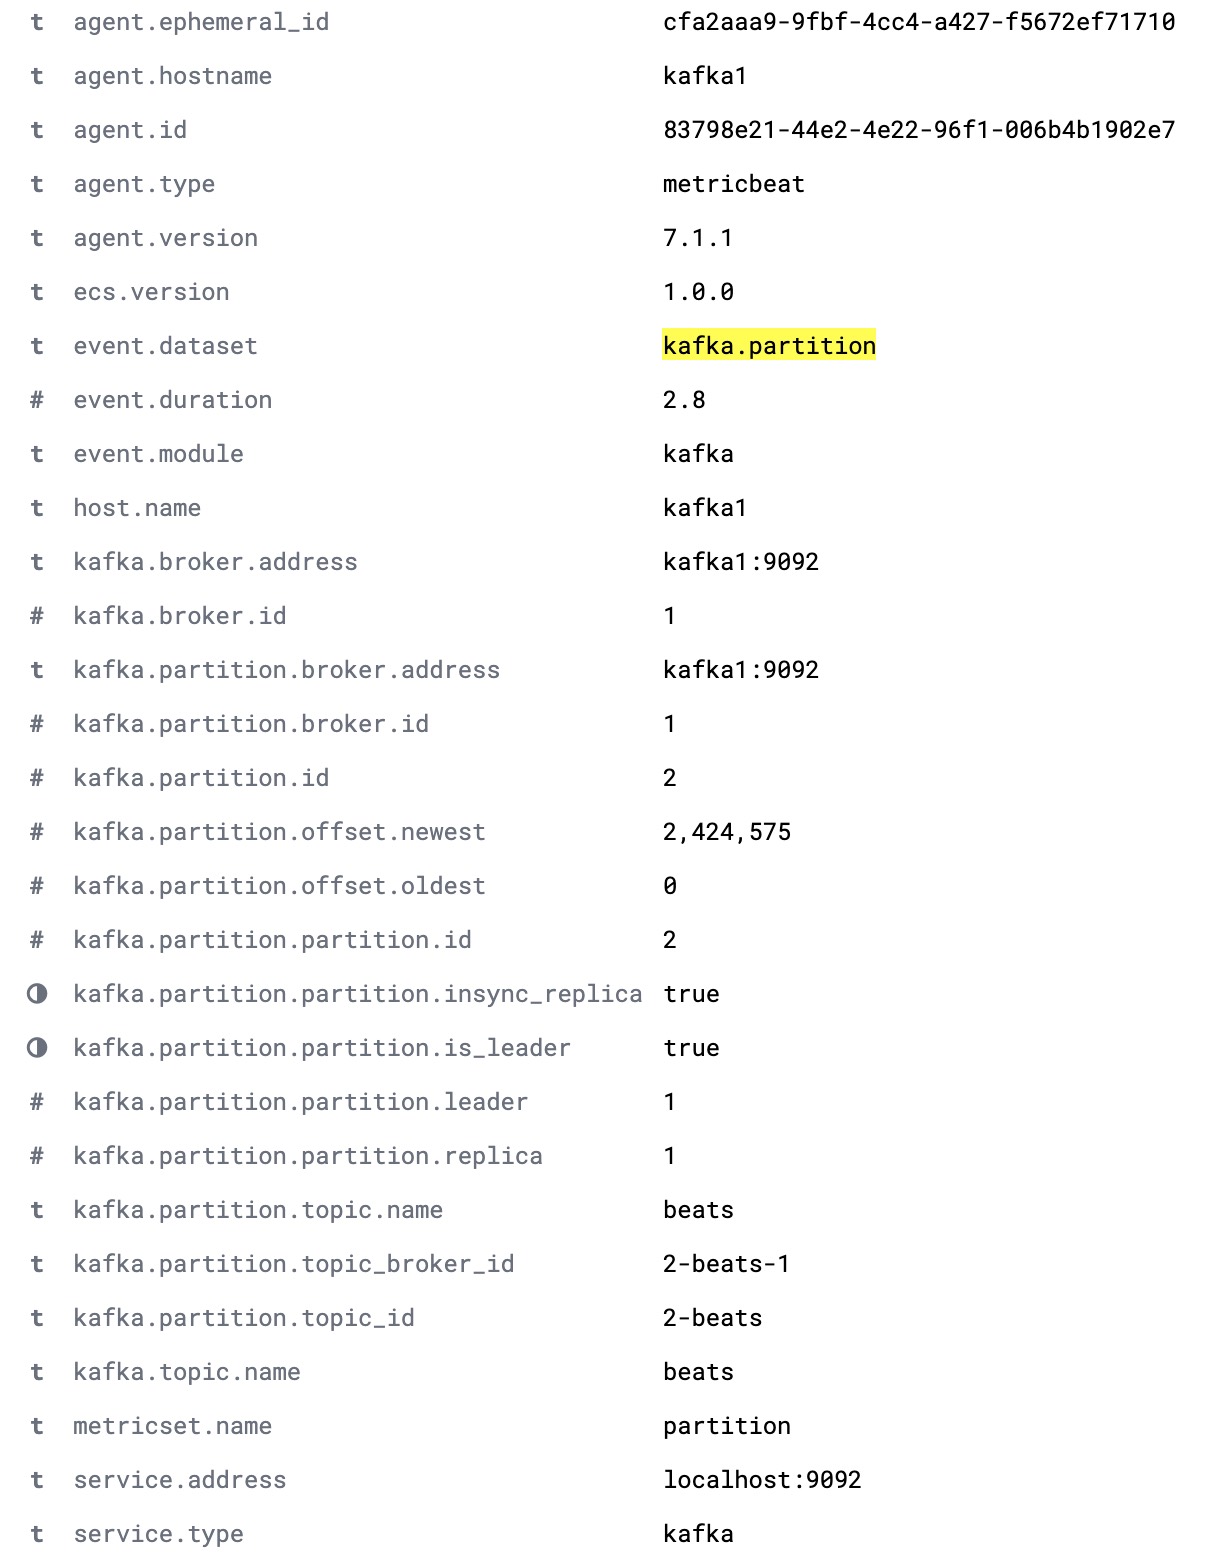 Vollständiges „kafka.partition“-Dokument mit allen Einzelheiten zu den Partitionen im Cluster